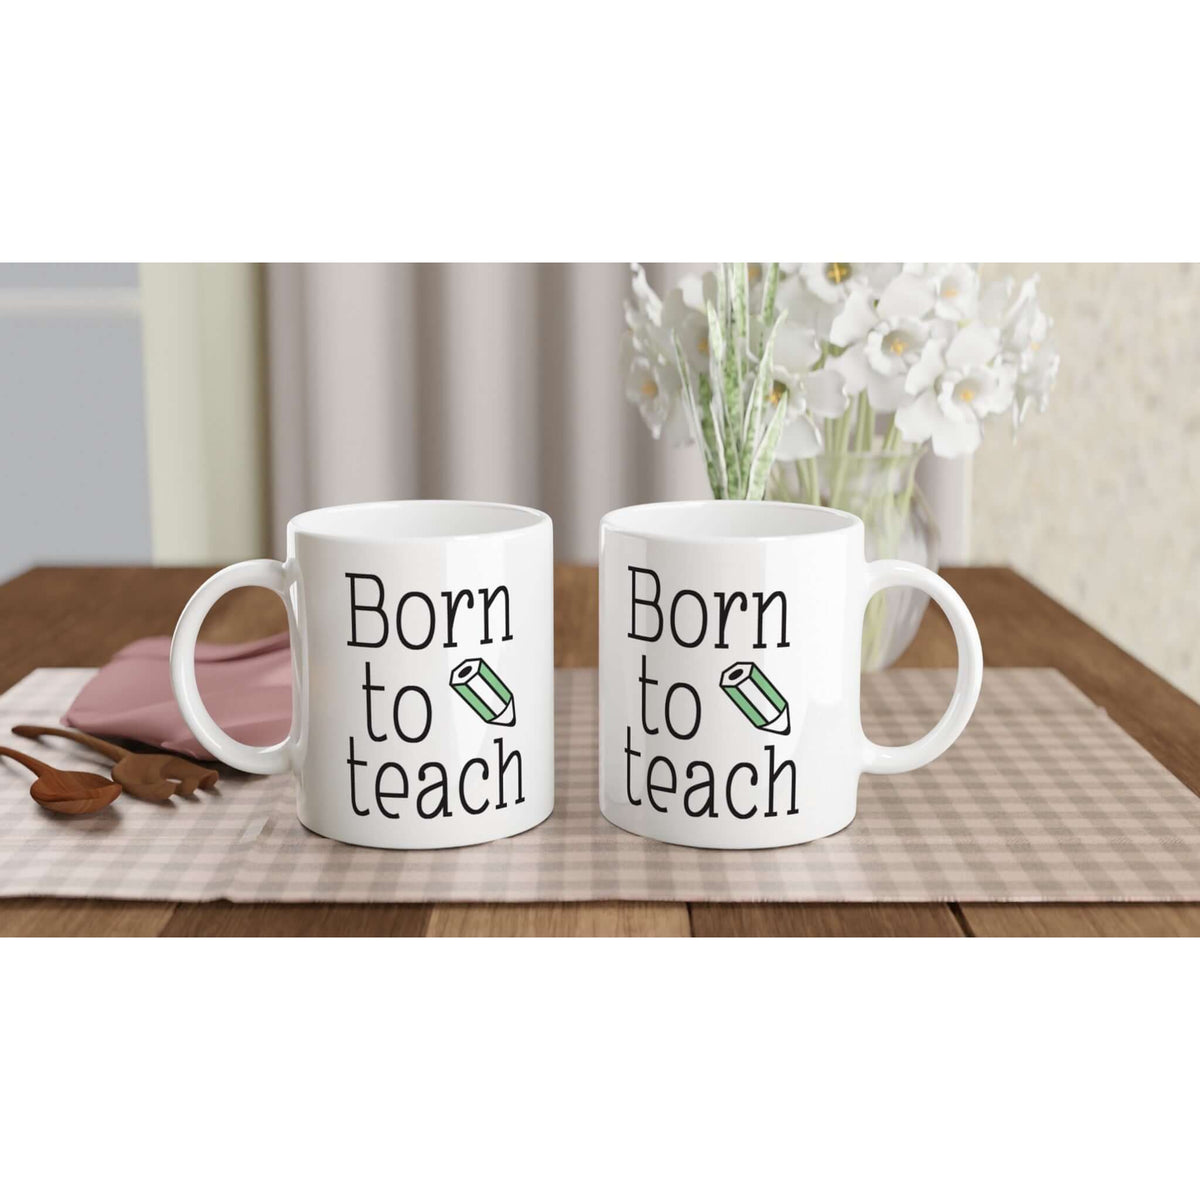 Born To Teach mug